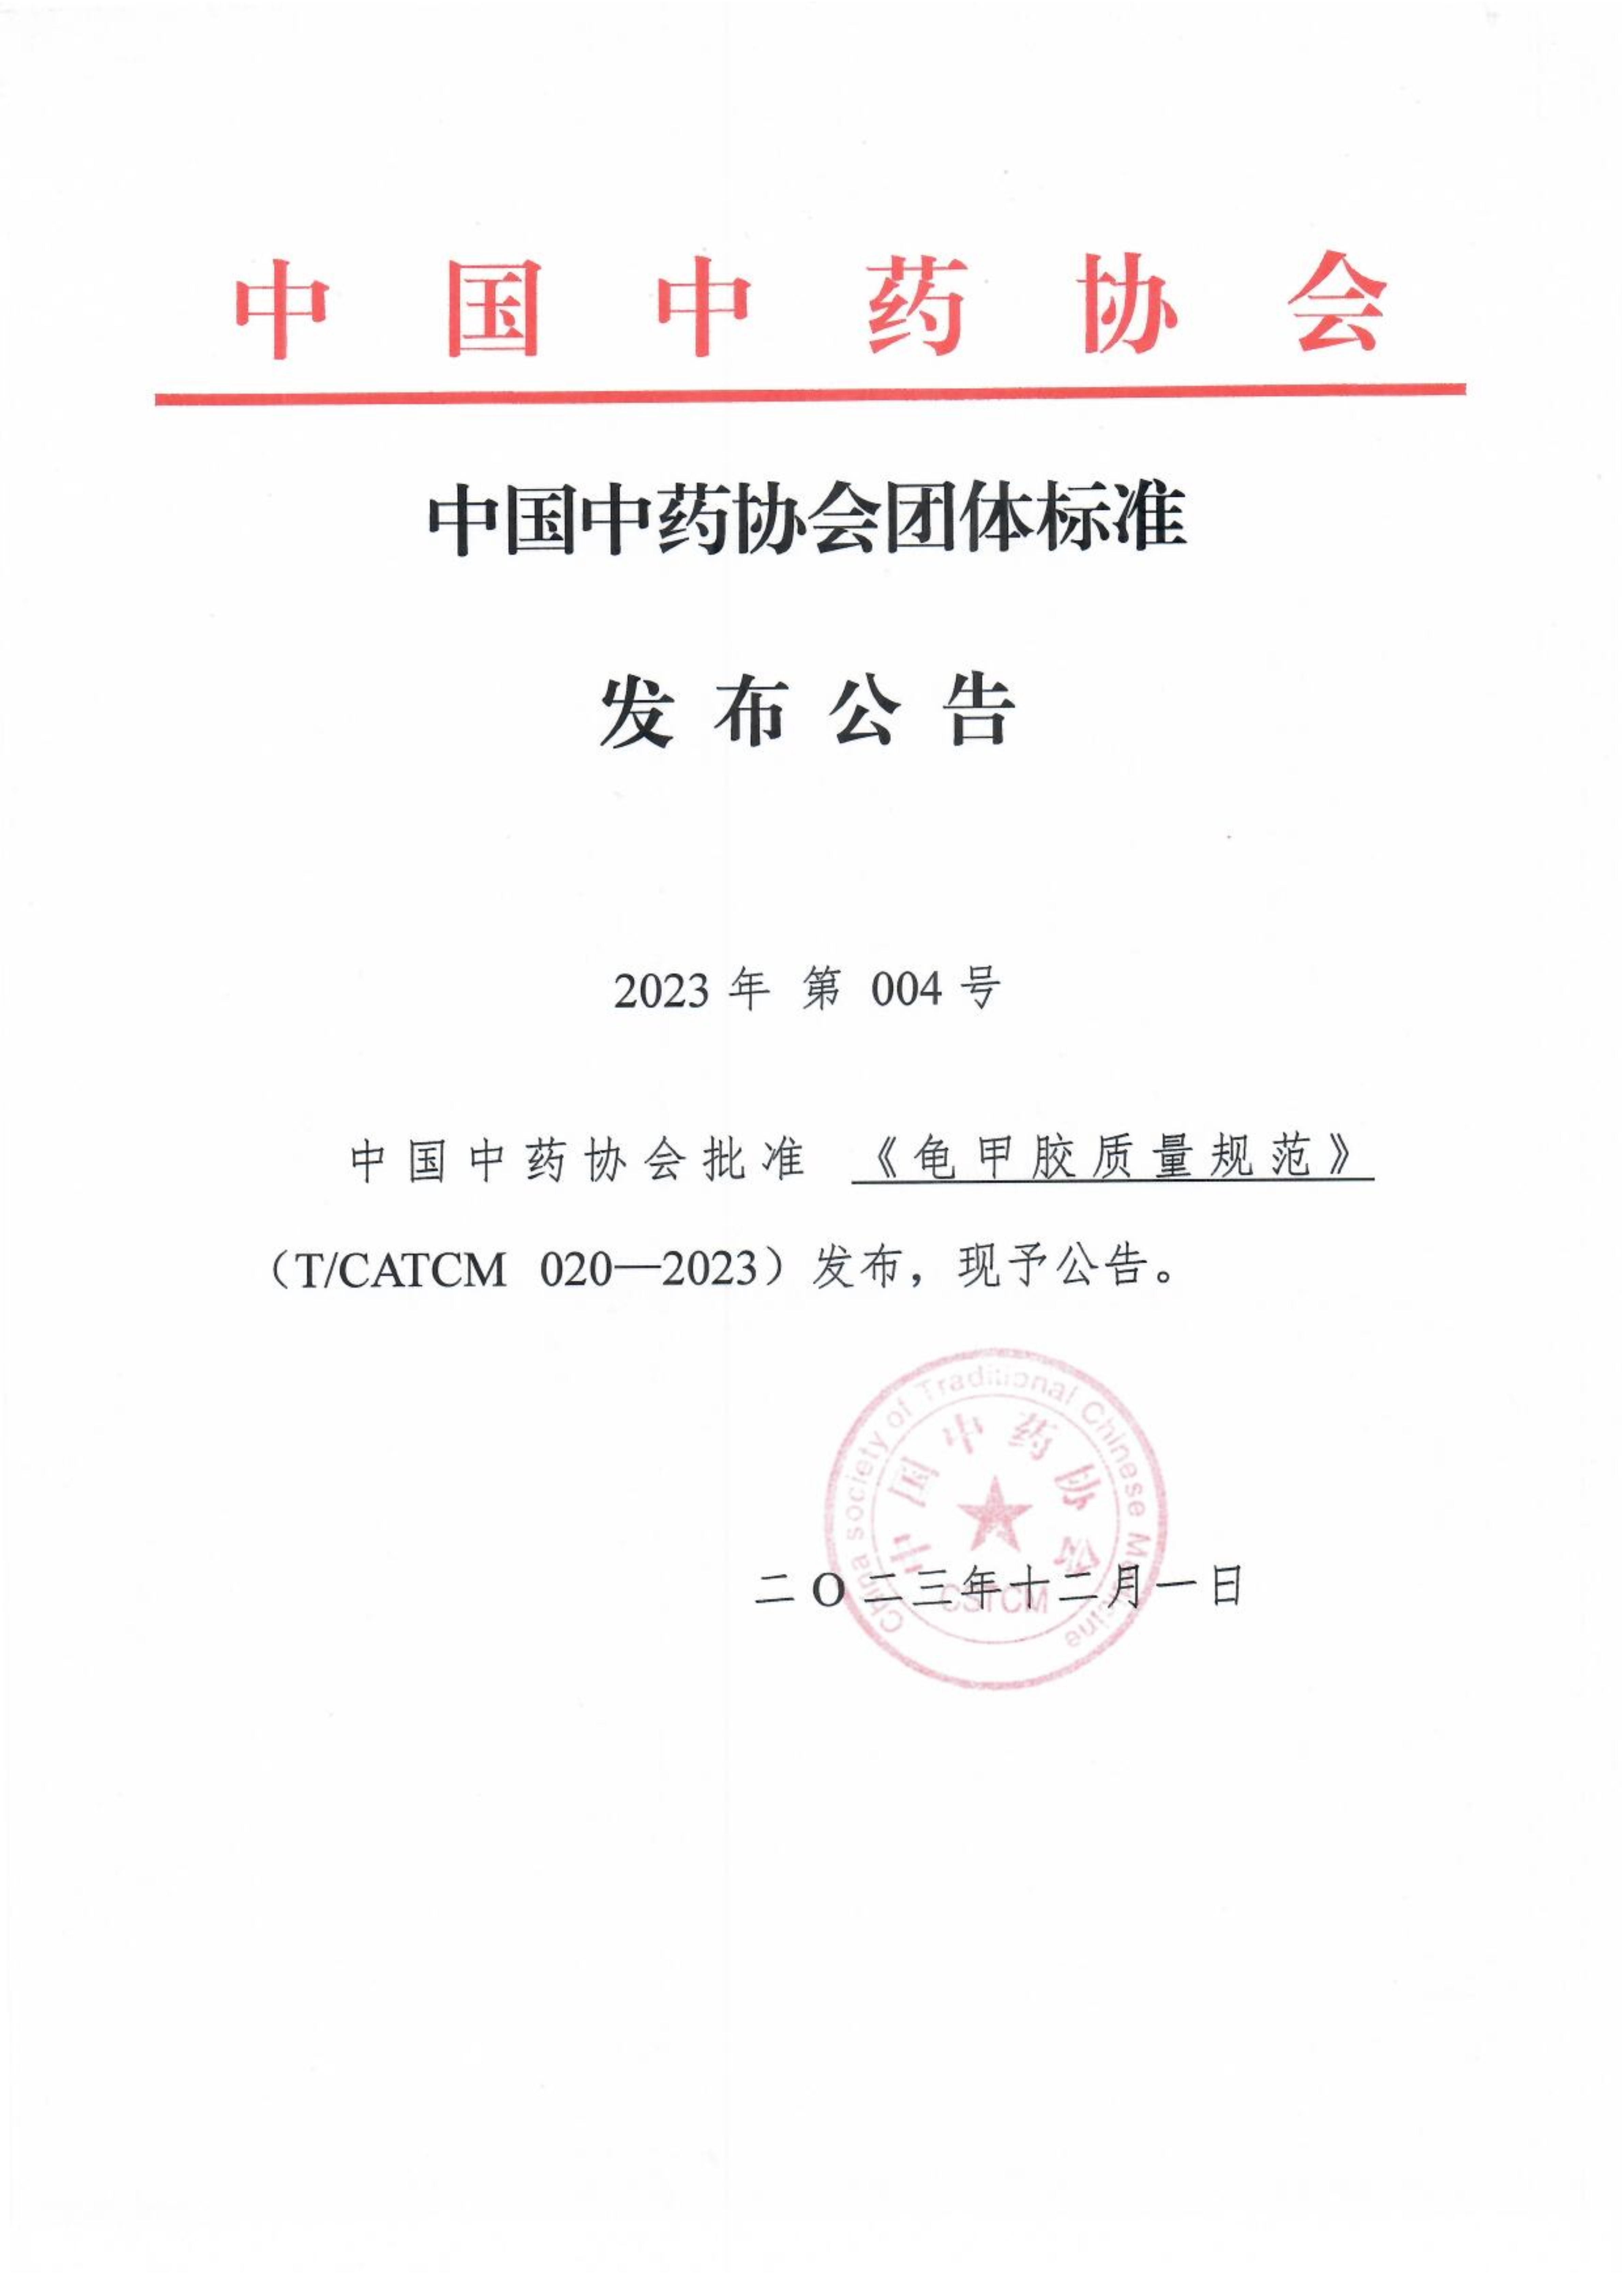 23.12.1 中国中药协会团体标准发布公告—《龟甲胶质量规范》_1.jpg